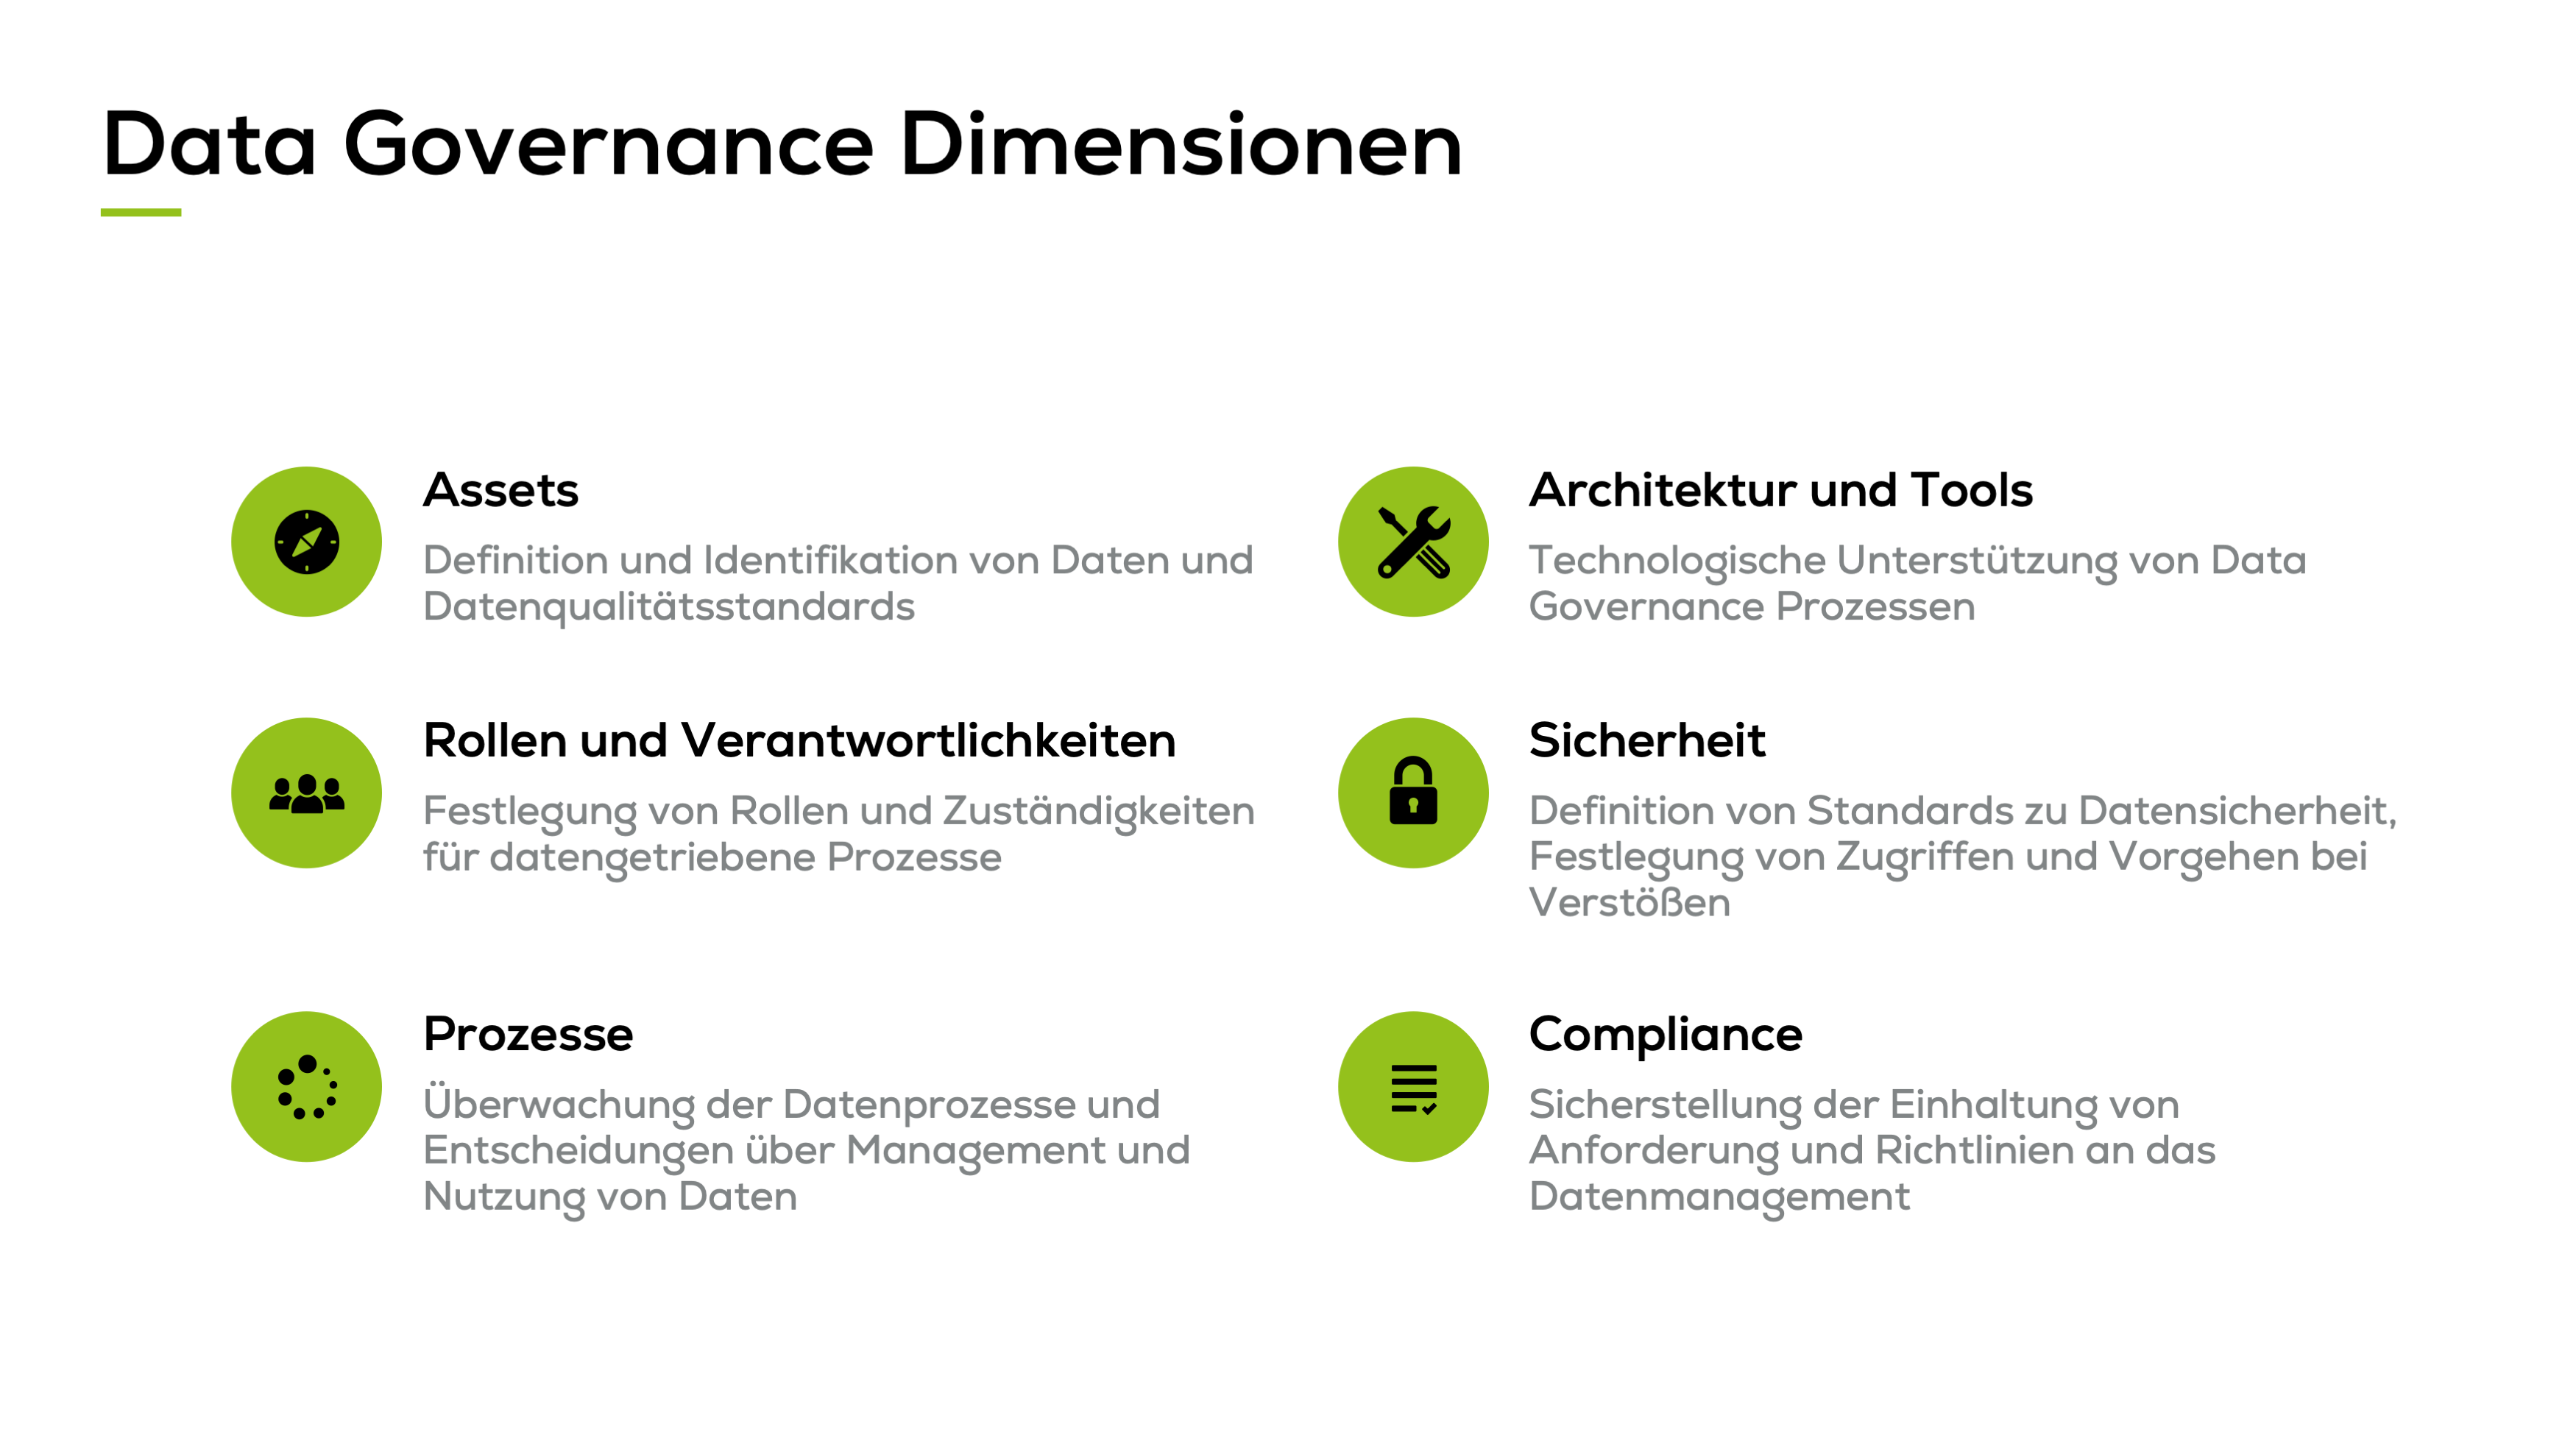 Die Dimensionen von Data Governance: Assets, Rollen und Verantwortlichkeiten, Prozesse, Architektur und Tools, Sicherheit, Compliance